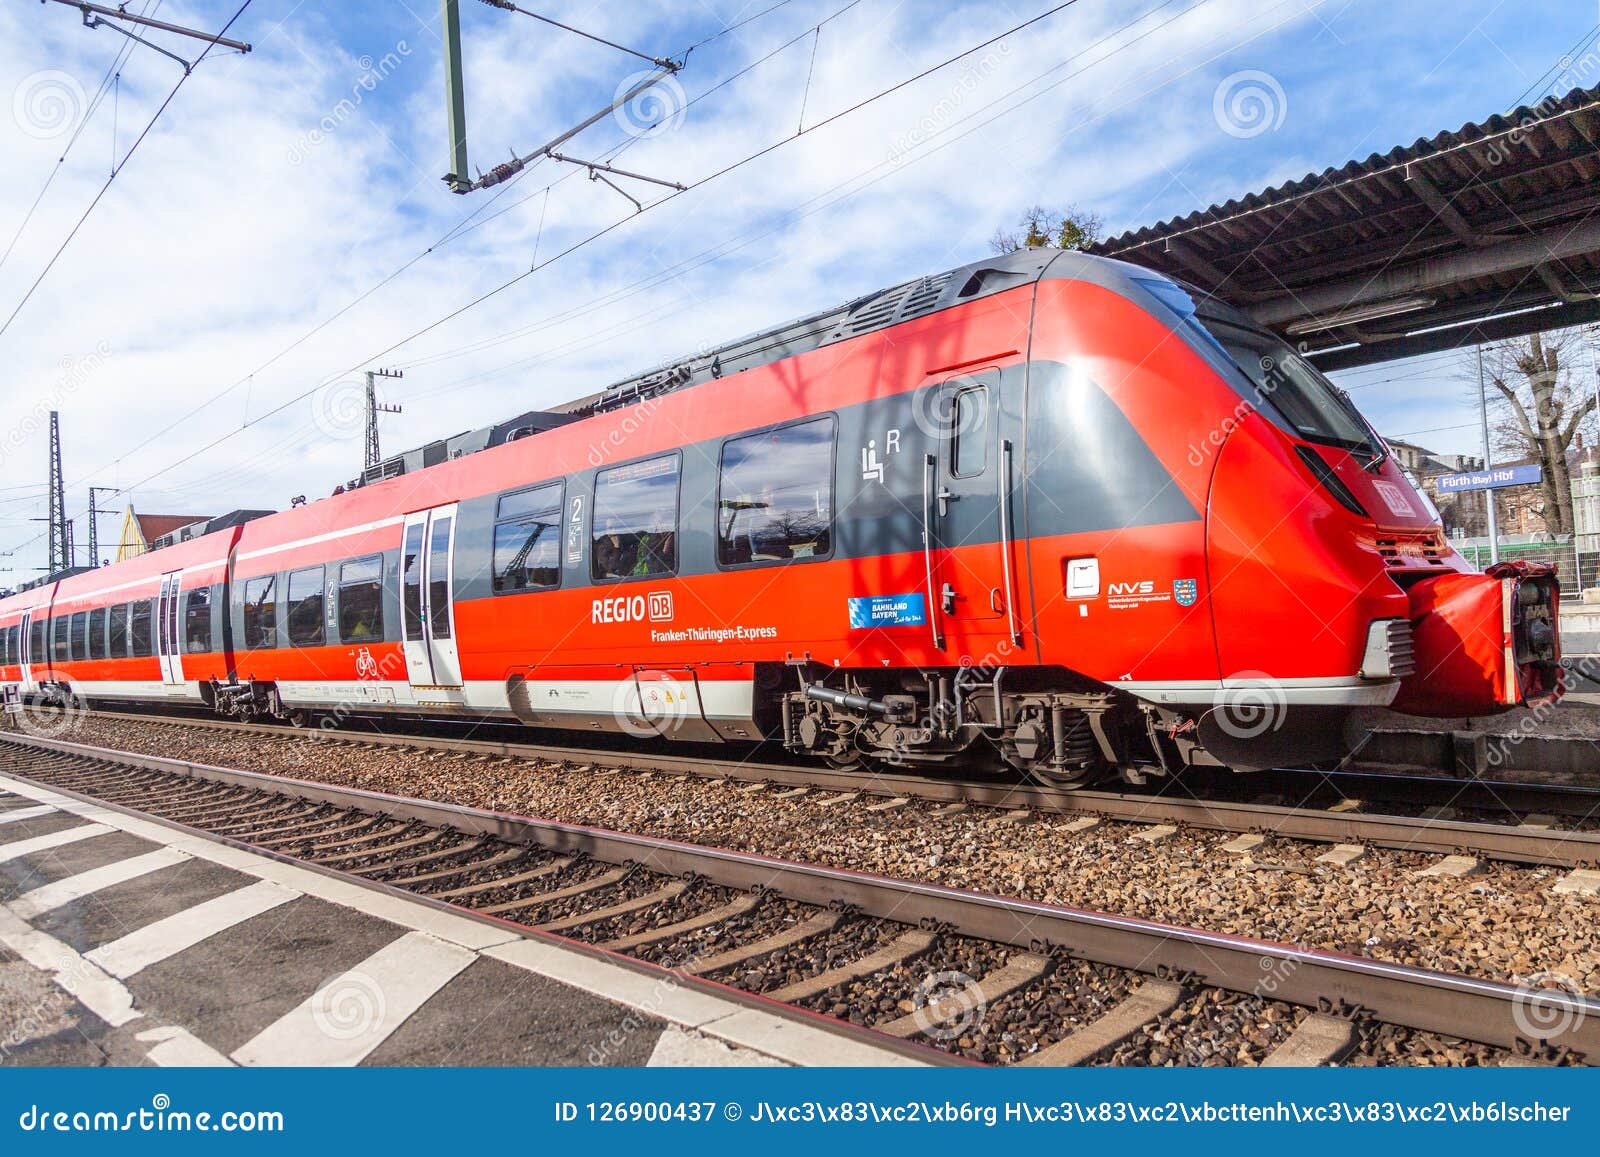 RE Regional Express Train From Deutsche Bahn Editorial